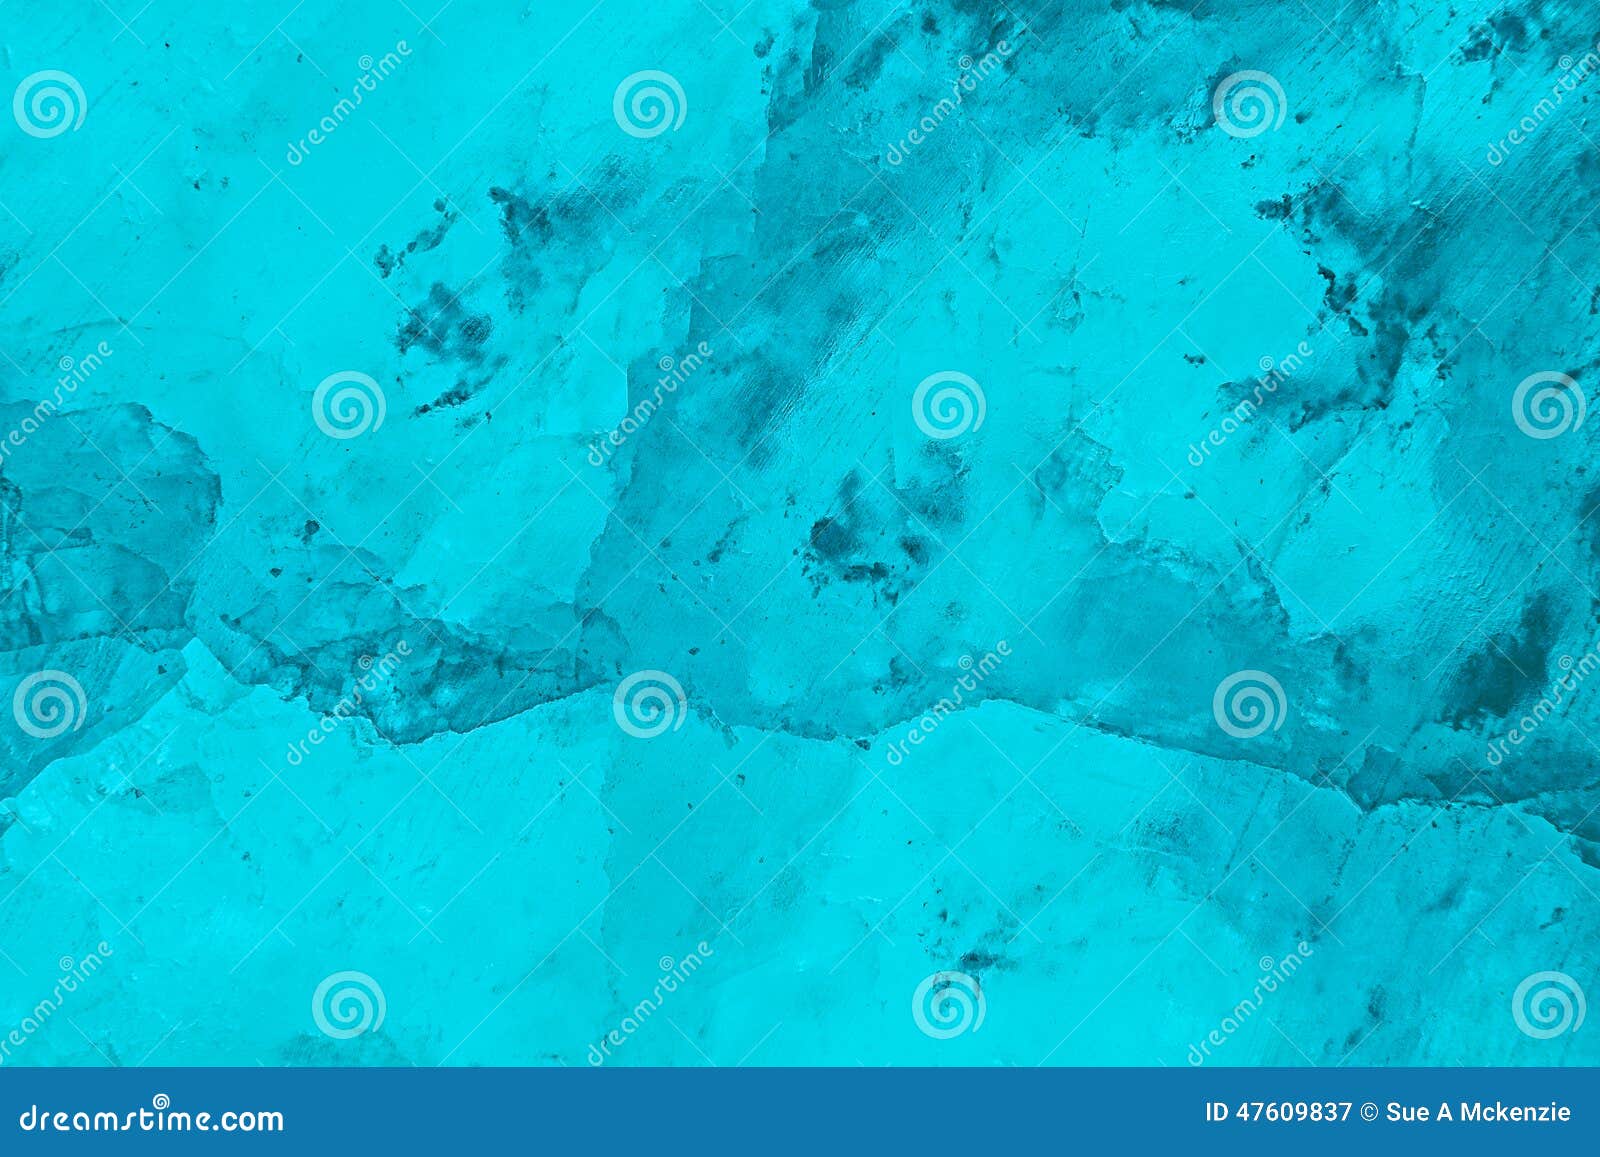 Light Blue Background Images - Free Download on Freepik